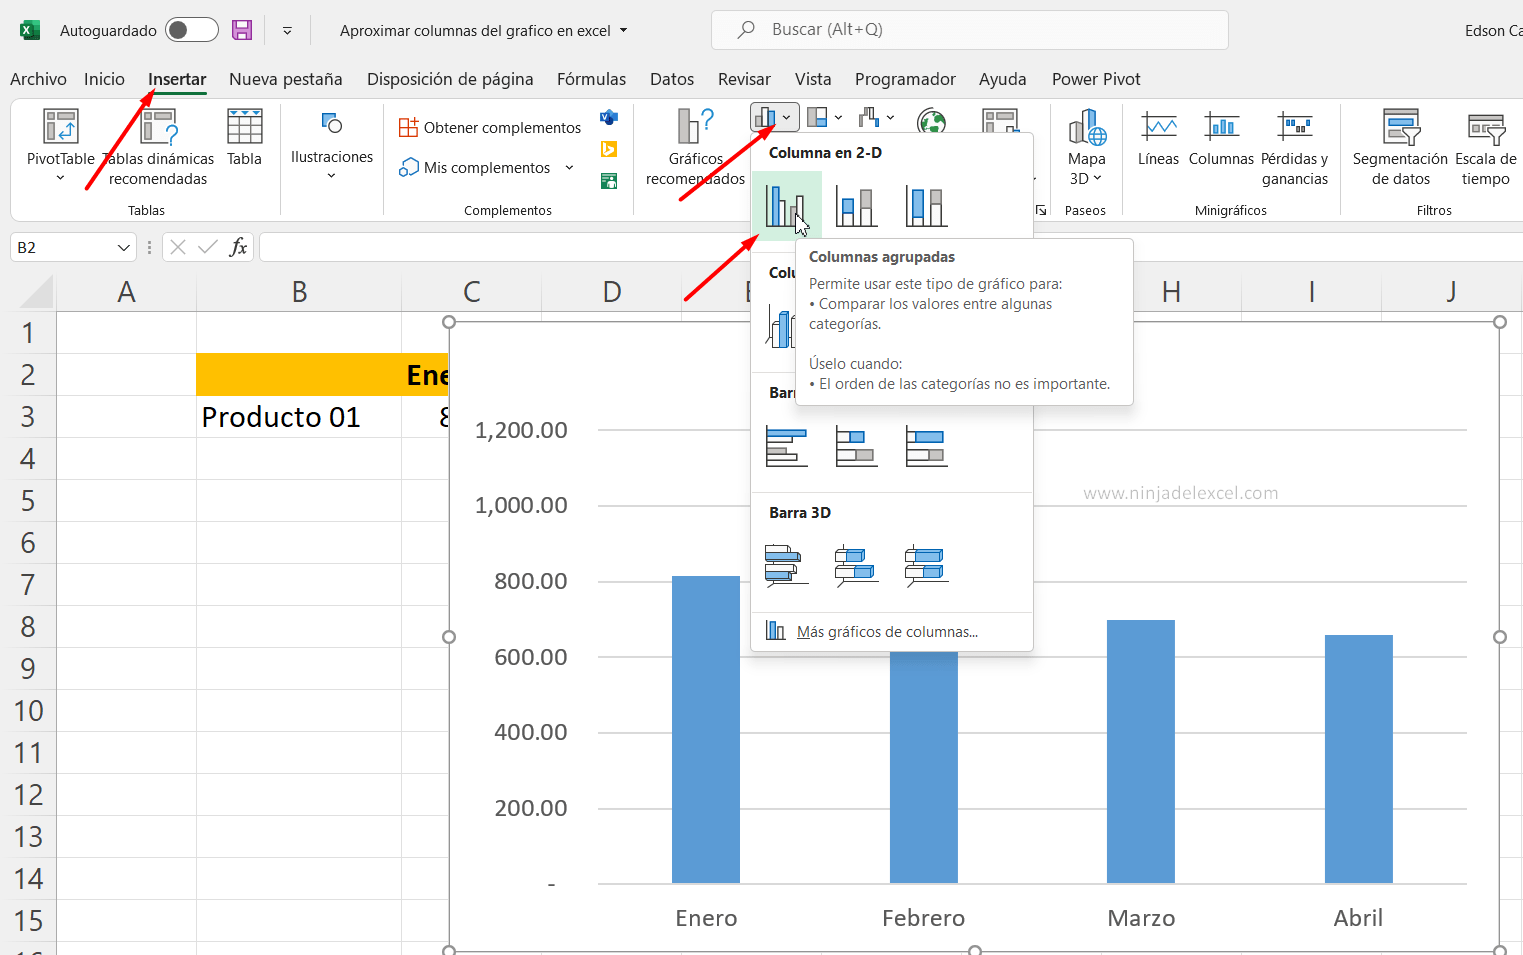 Aproximar columnas de graficos en Excel